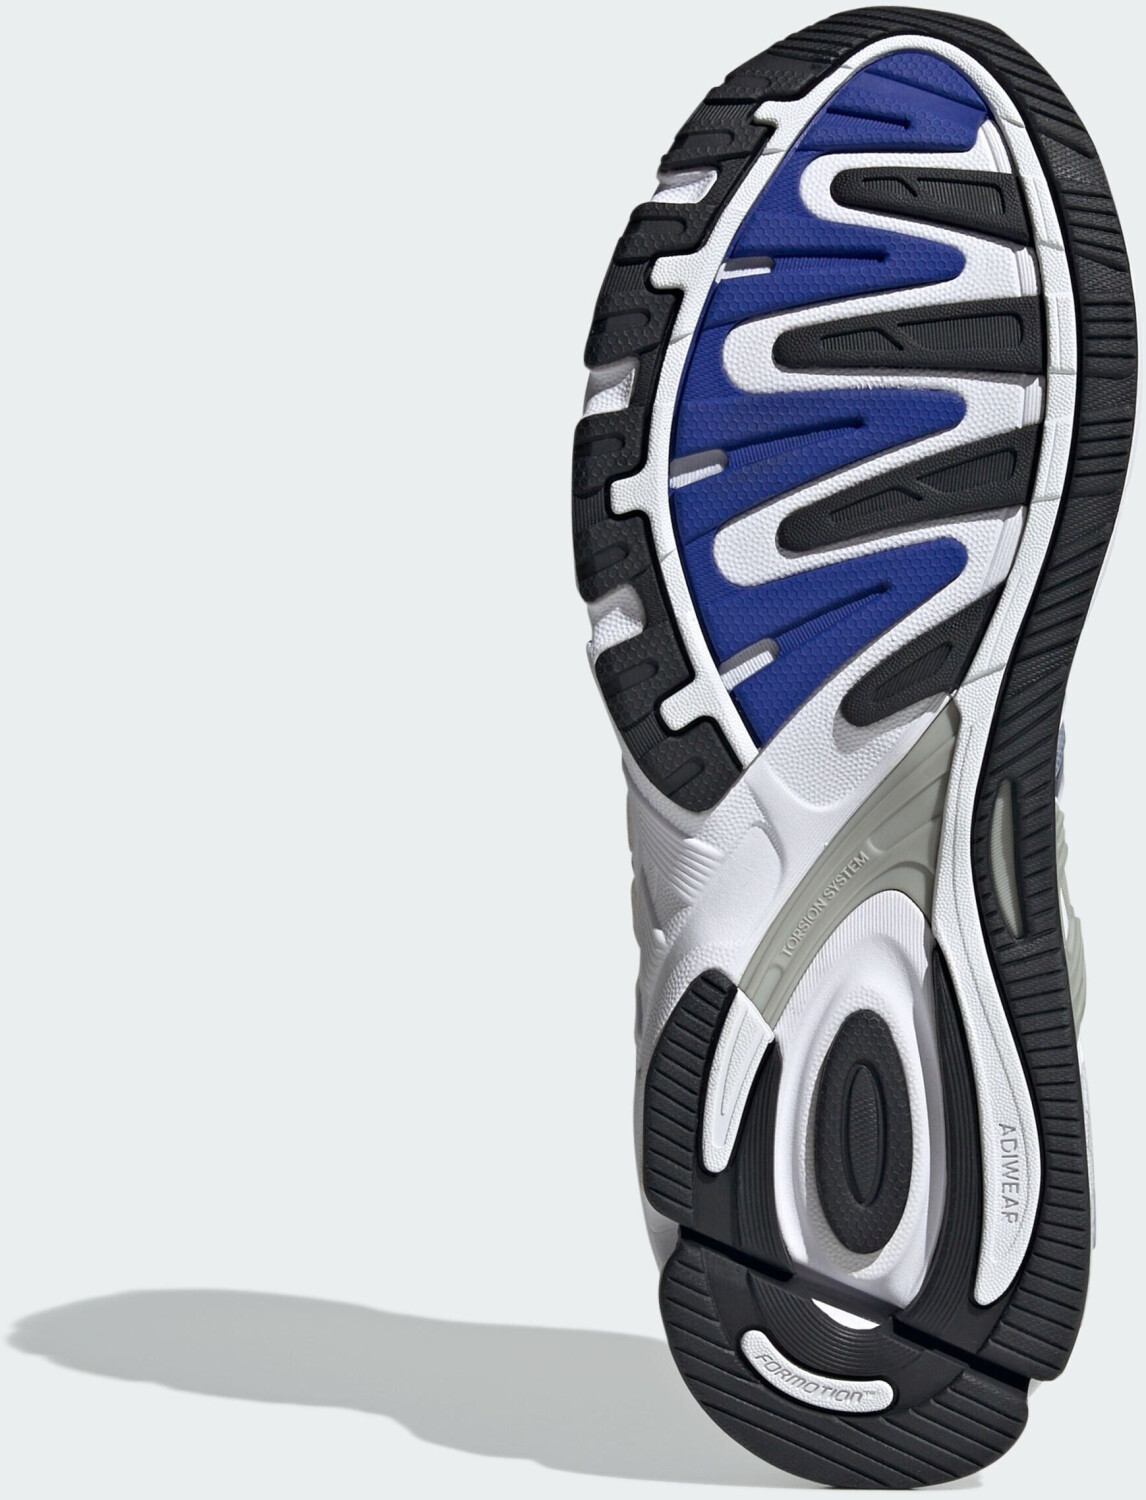 Adidas Response white/core blue 84,90 € CL ab | (ID4596) Preisvergleich bei cloud black/lucid